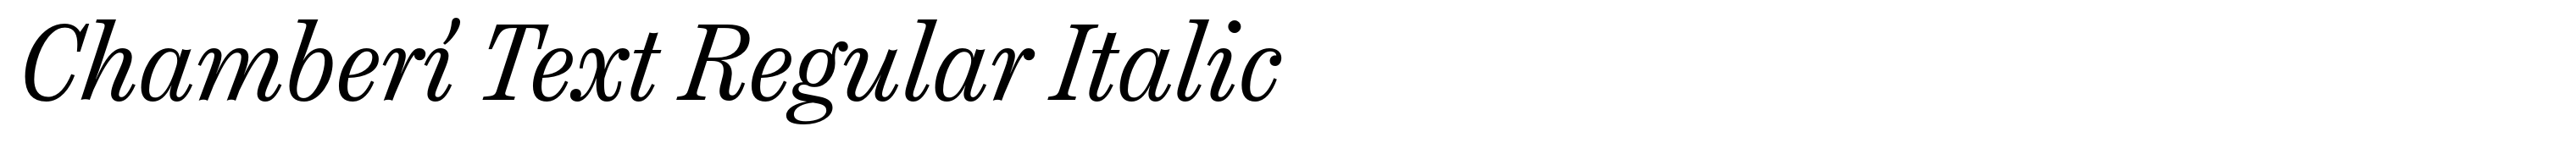 Chamberí Text Regular Italic